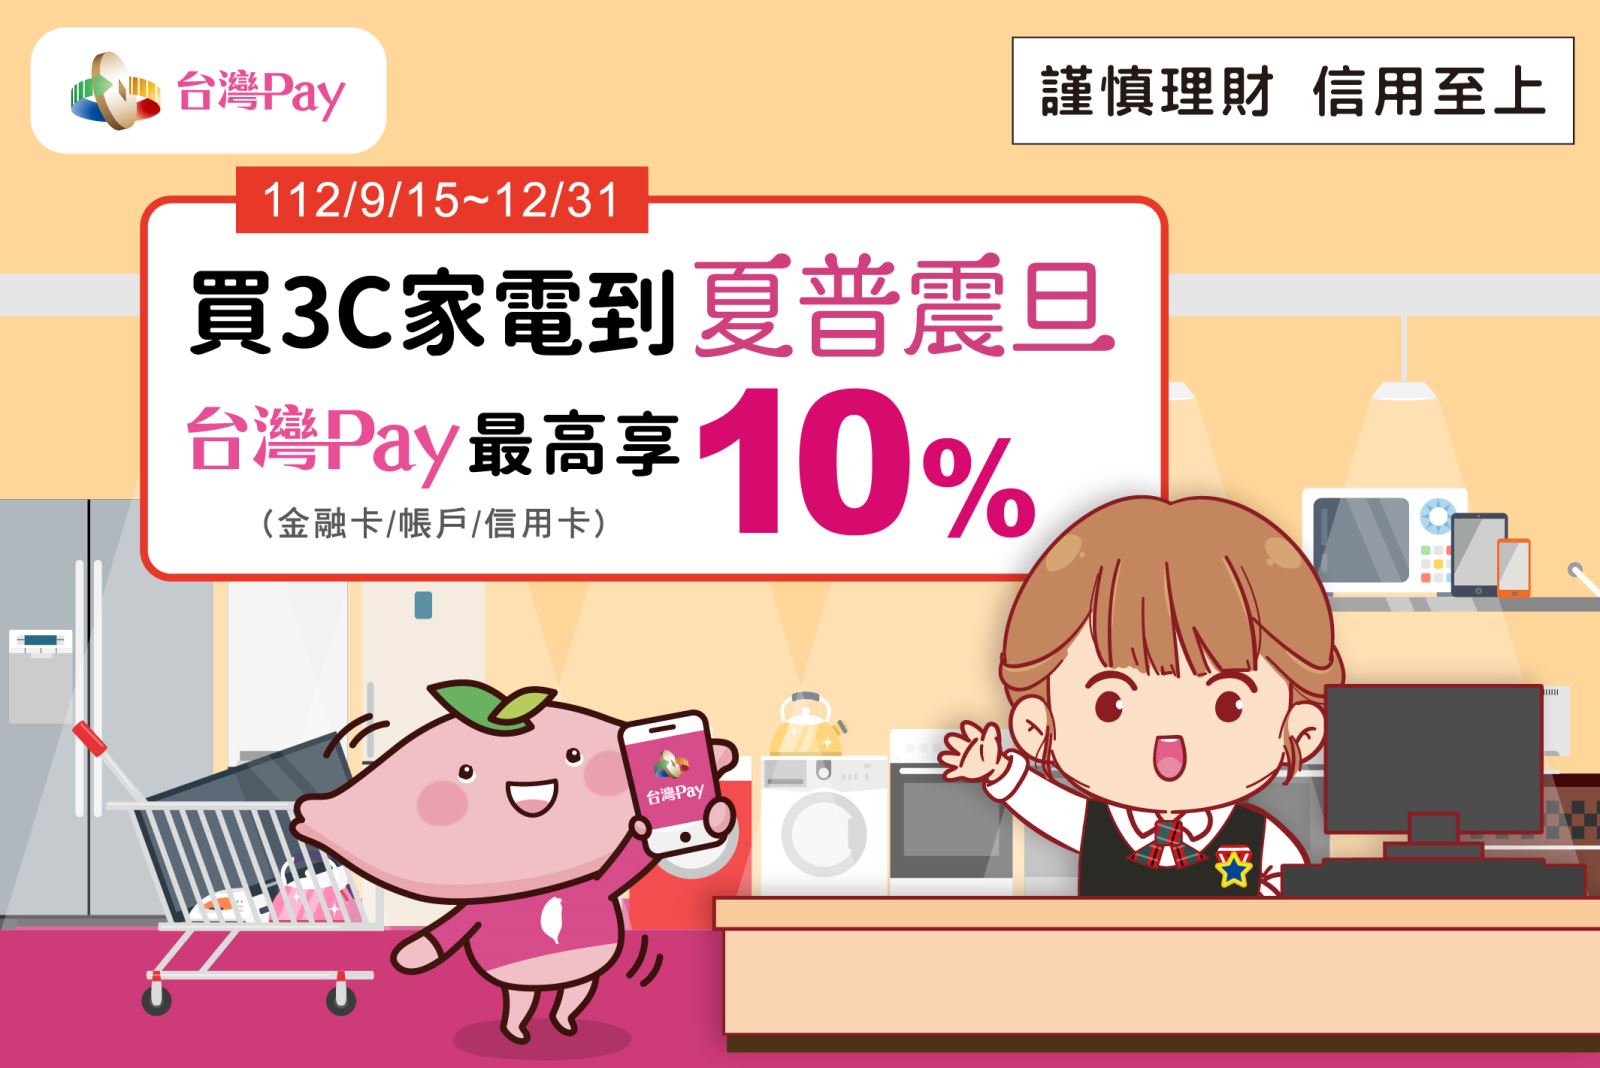 買 3C 家電到夏普震旦 台灣 Pay 最高享 10%